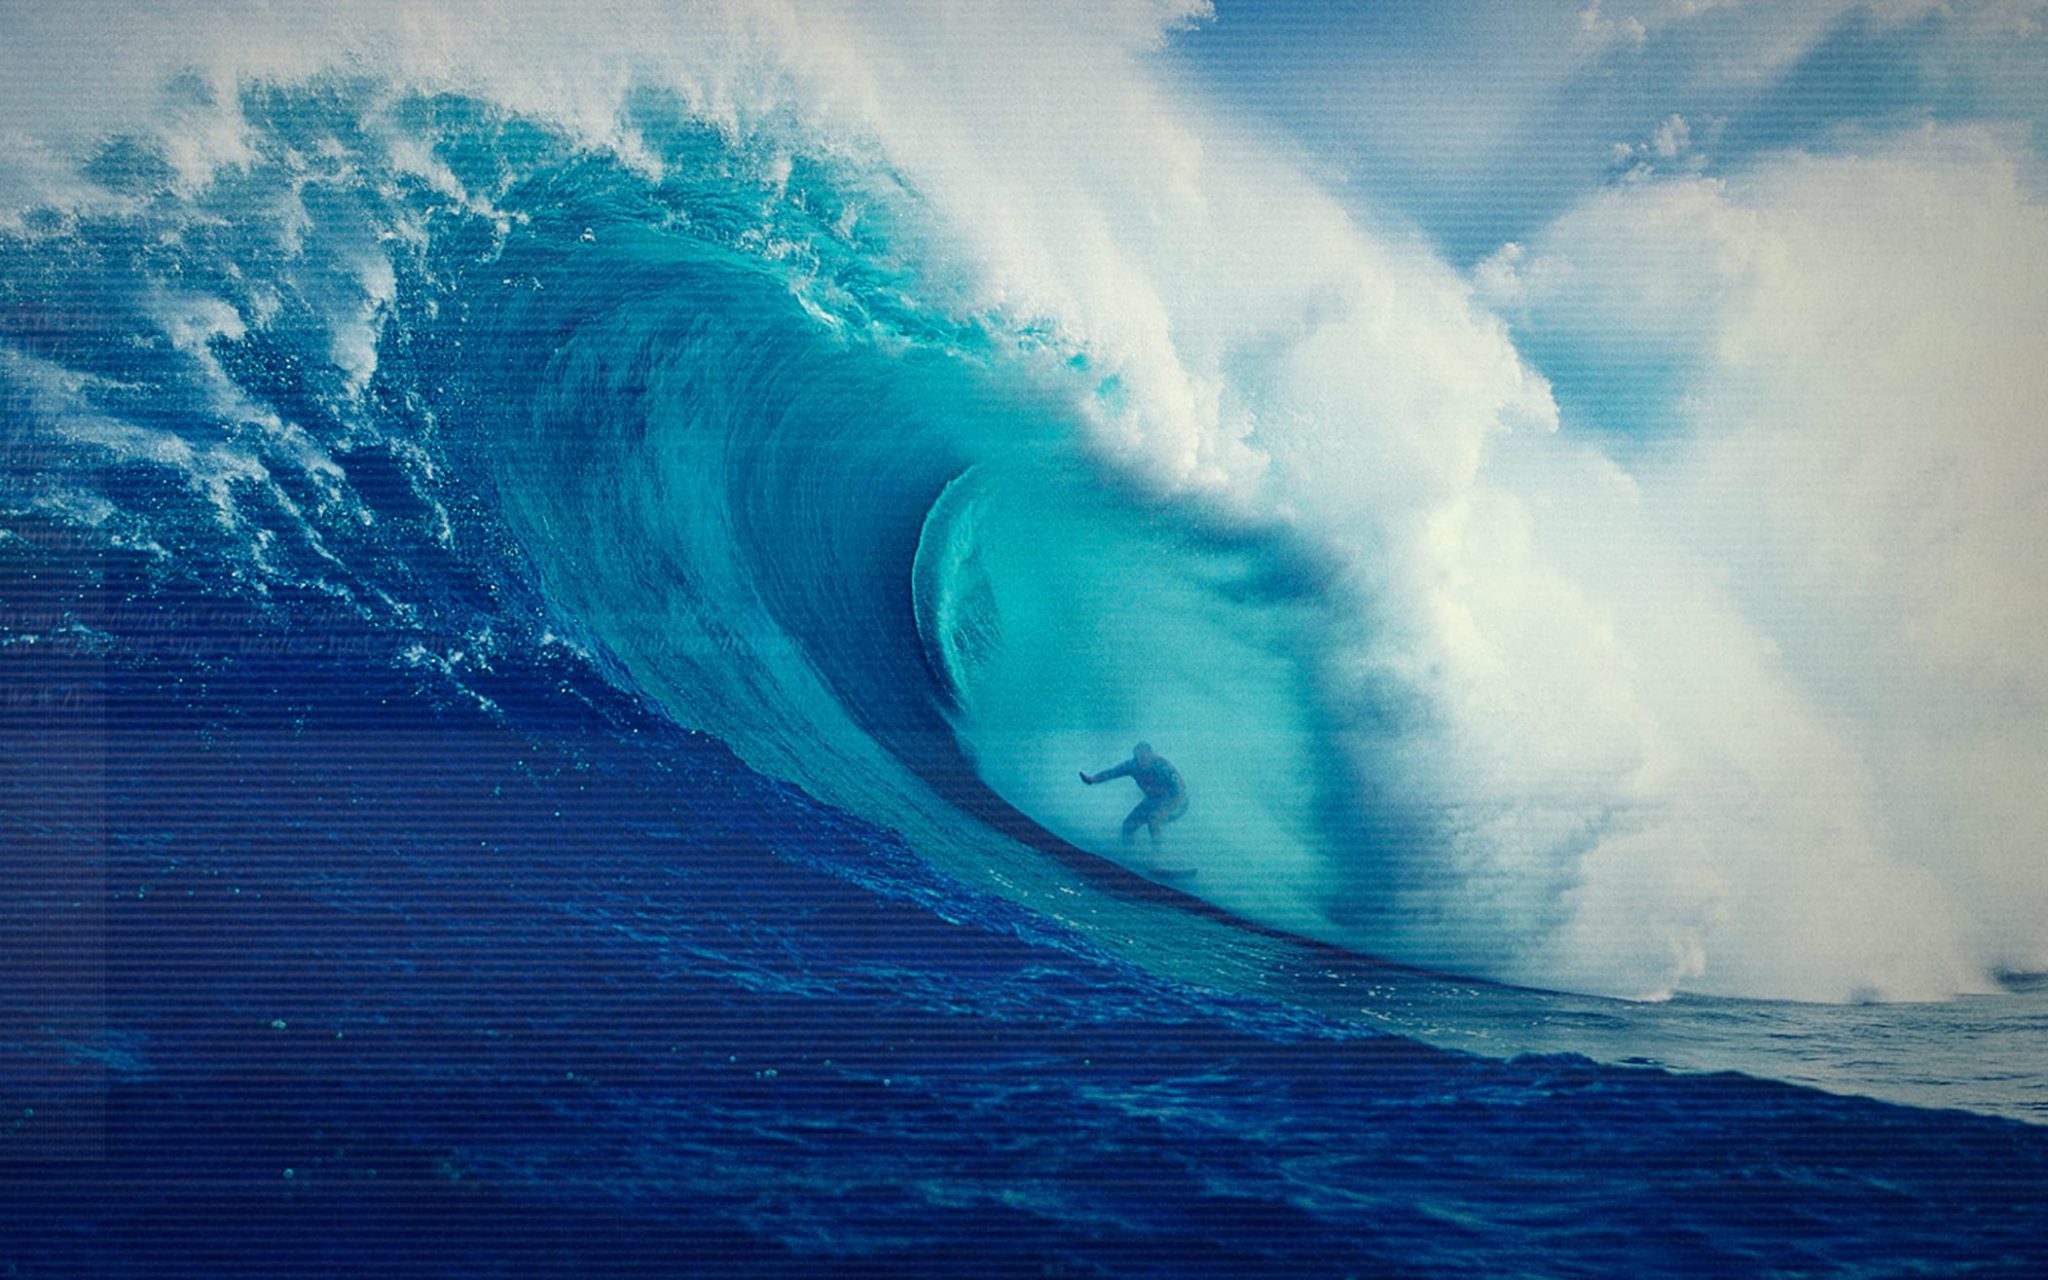 En surfare rider på en stor våg ute i det blå havet